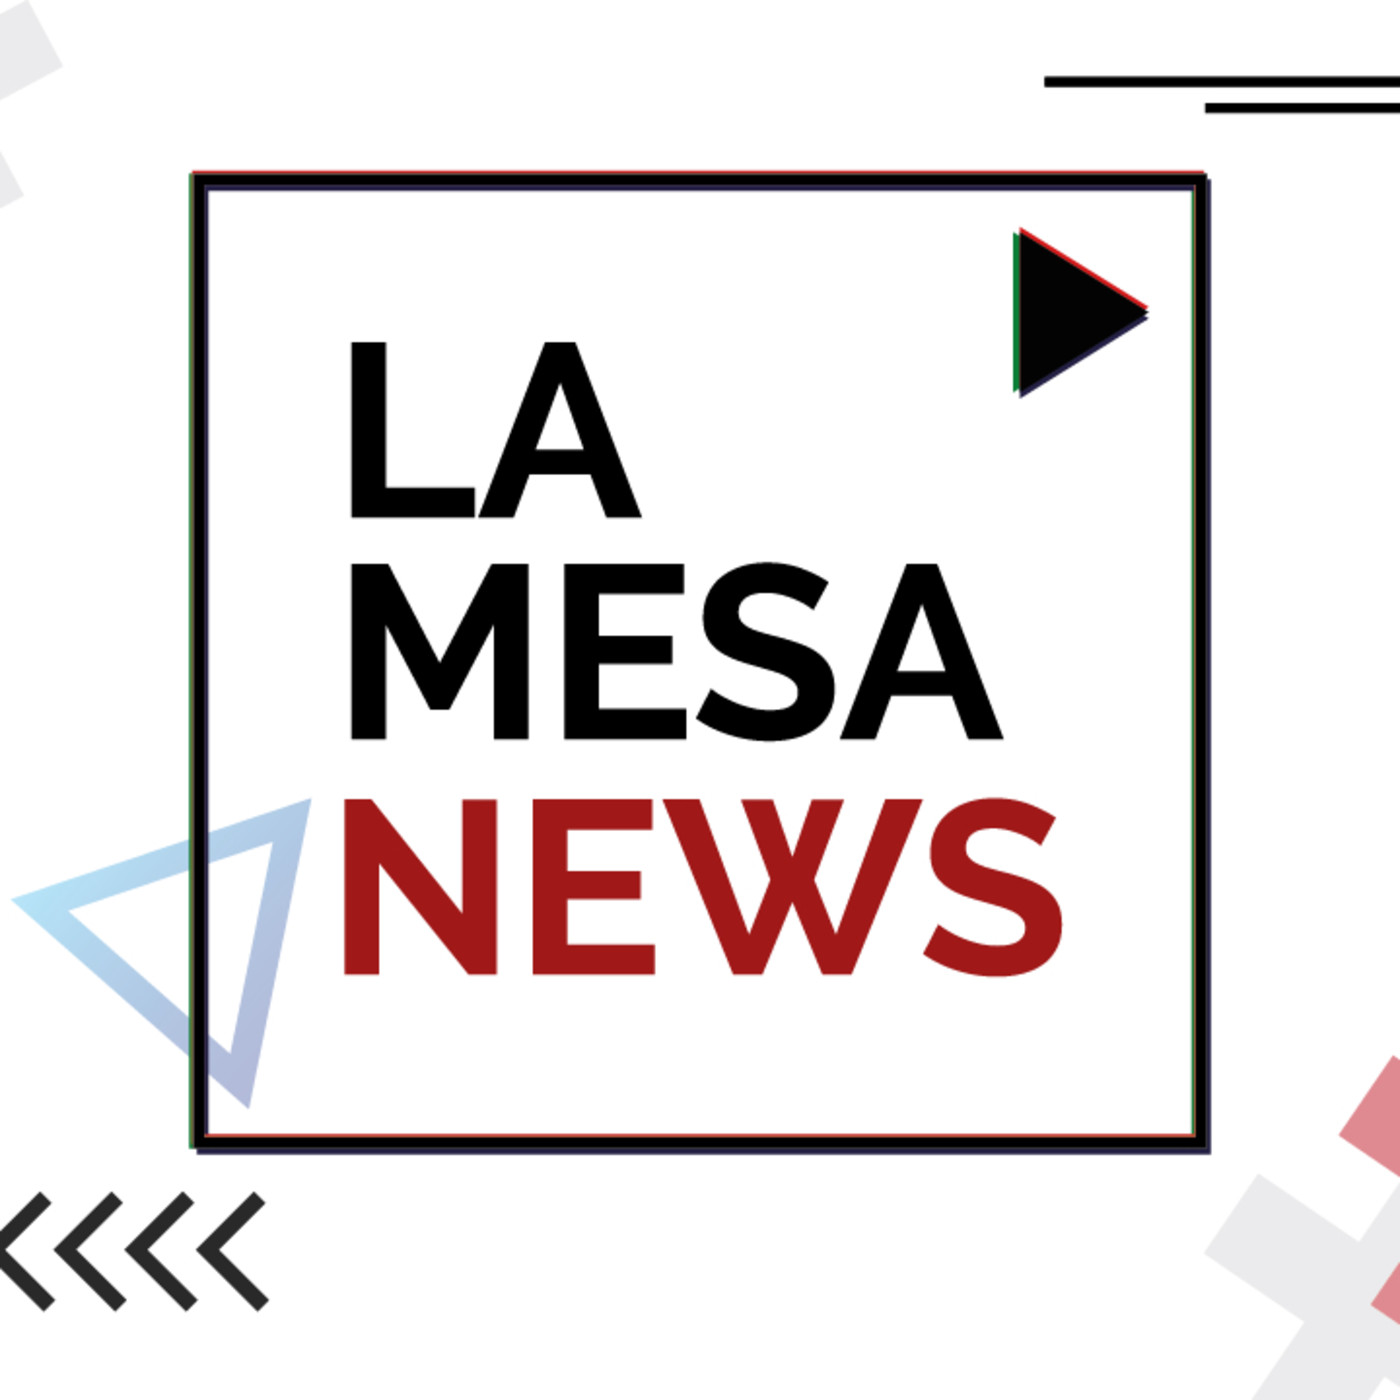 LA MESA NEWS